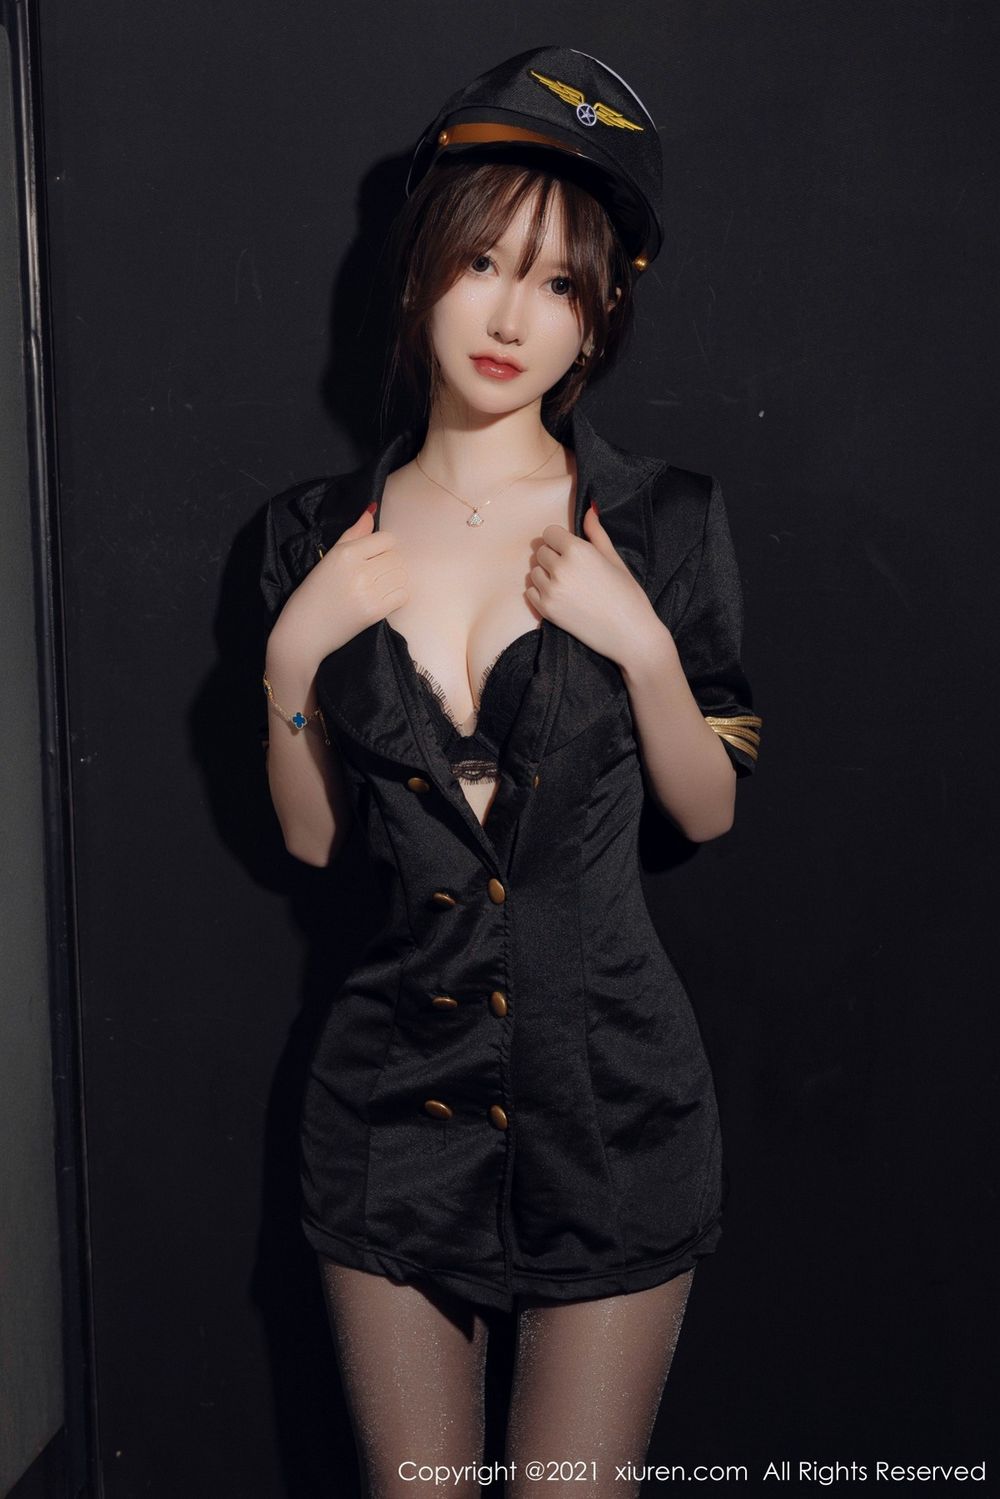 美女模特美桃酱黑色空军制服搭配黑丝系列性感写真